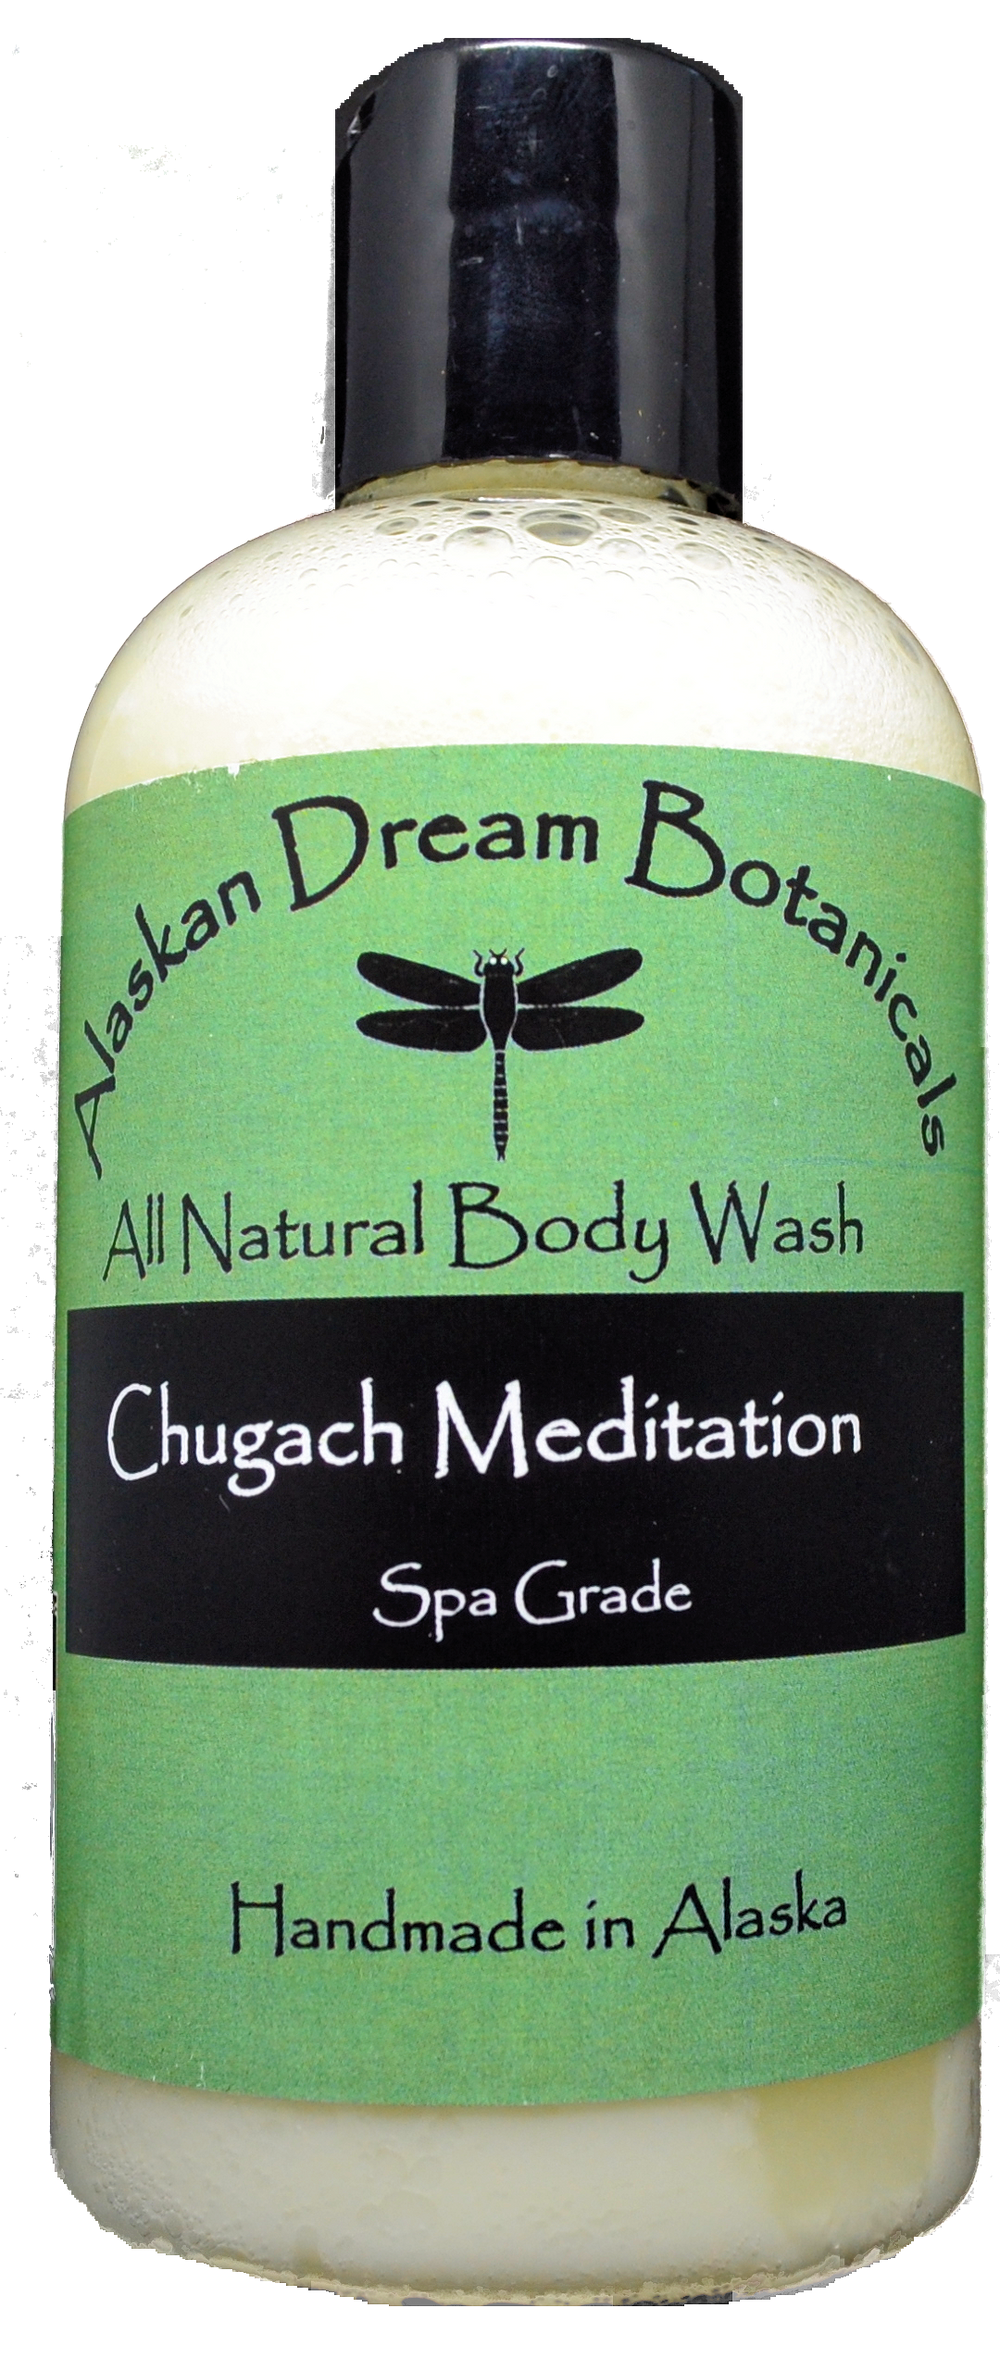 Chugach Meditation Spa Grade Body Wash - Alaskan Dream Botanicals